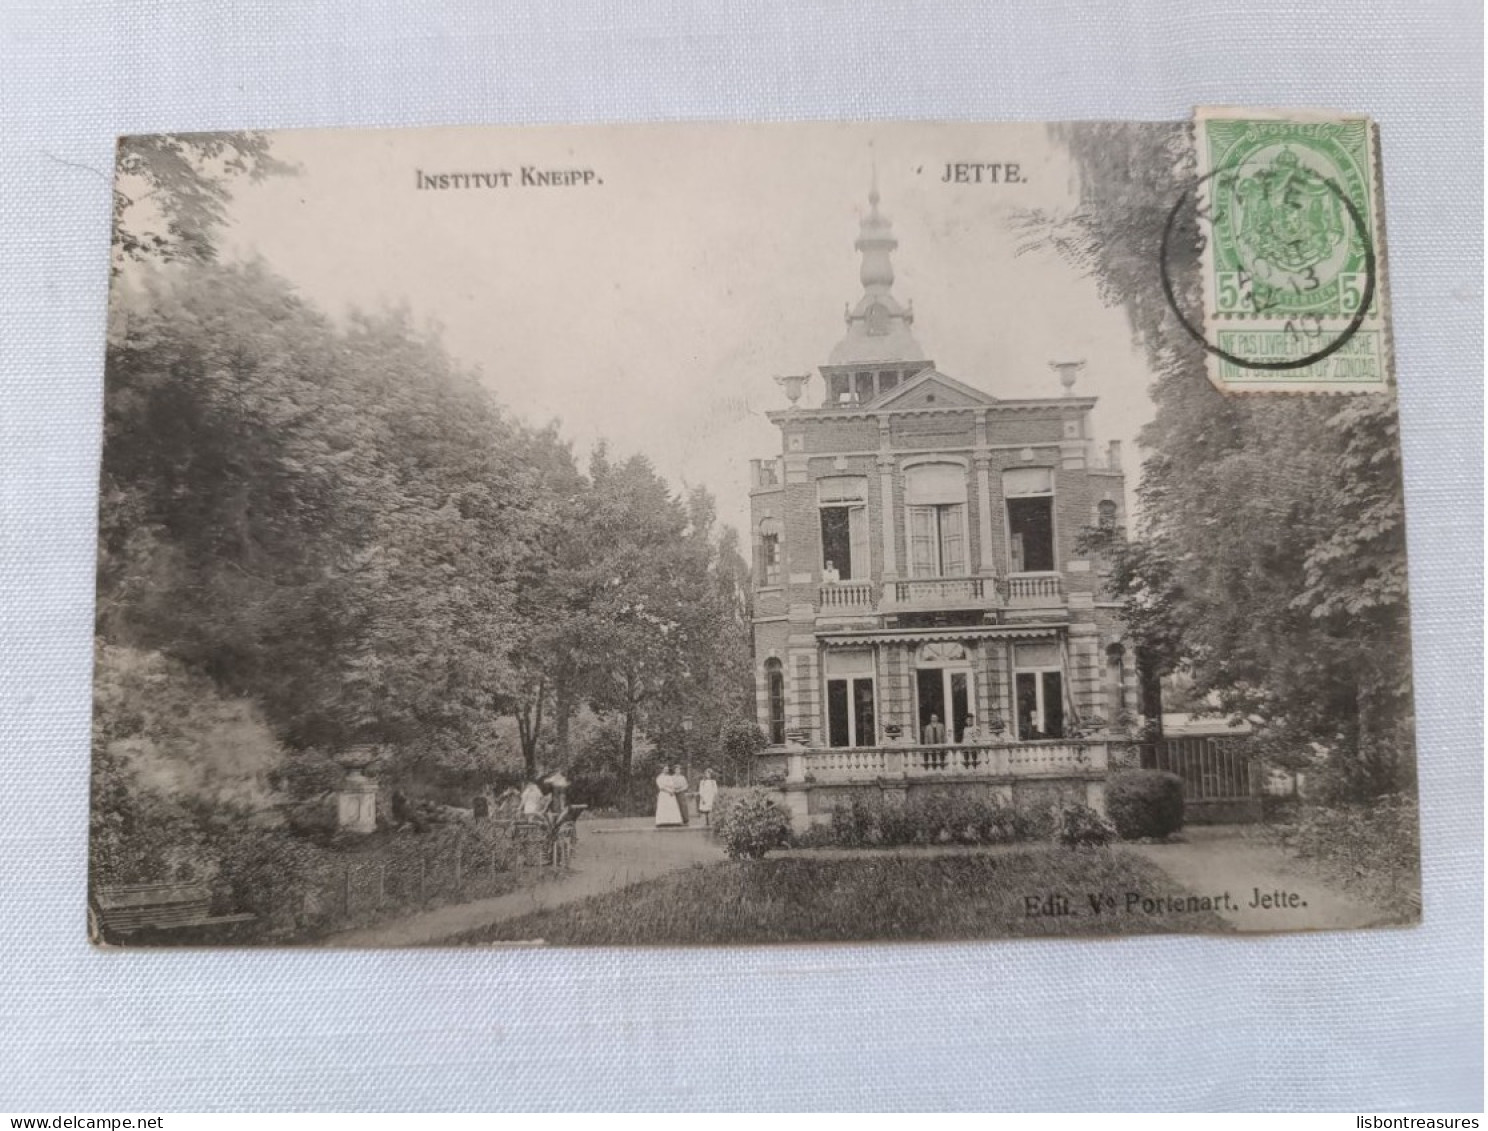 ANTIQUE POSTCARD BELGIUM JETTE - INSTITUT KNEIPP CIRCULATED 1910 - Jette